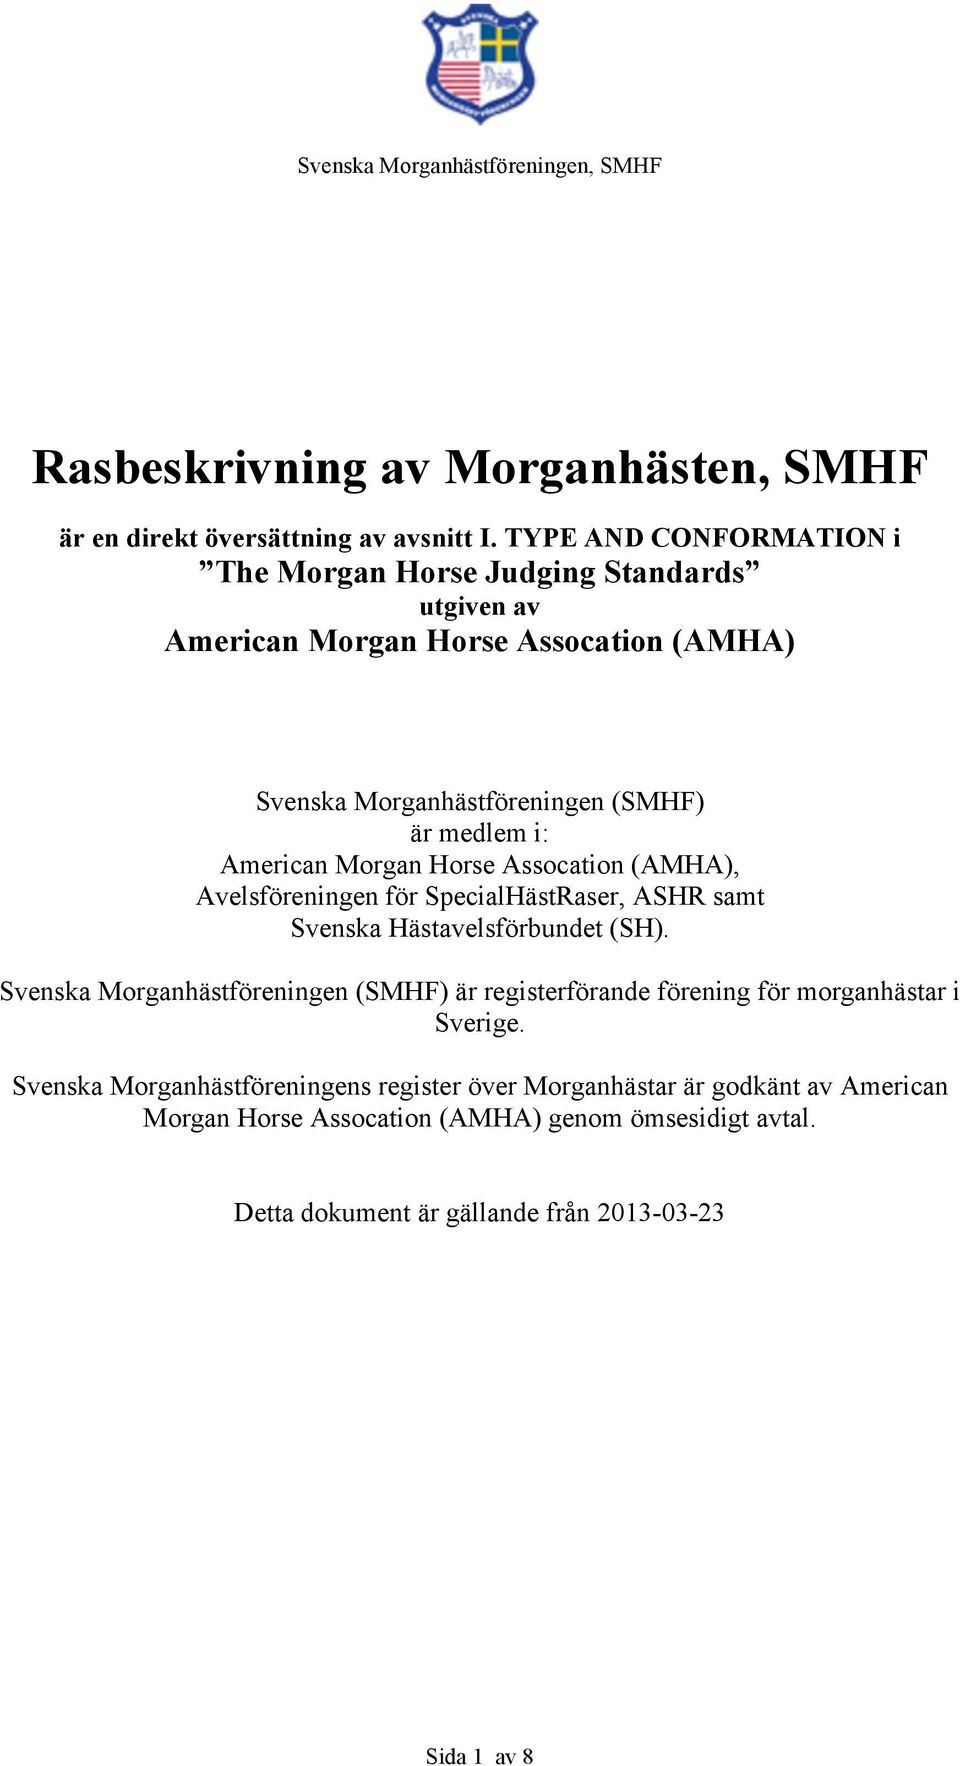 American Morgan Horse Assocation (AMHA), Avelsföreningen för SpecialHästRaser, ASHR samt Svenska Hästavelsförbundet (SH).